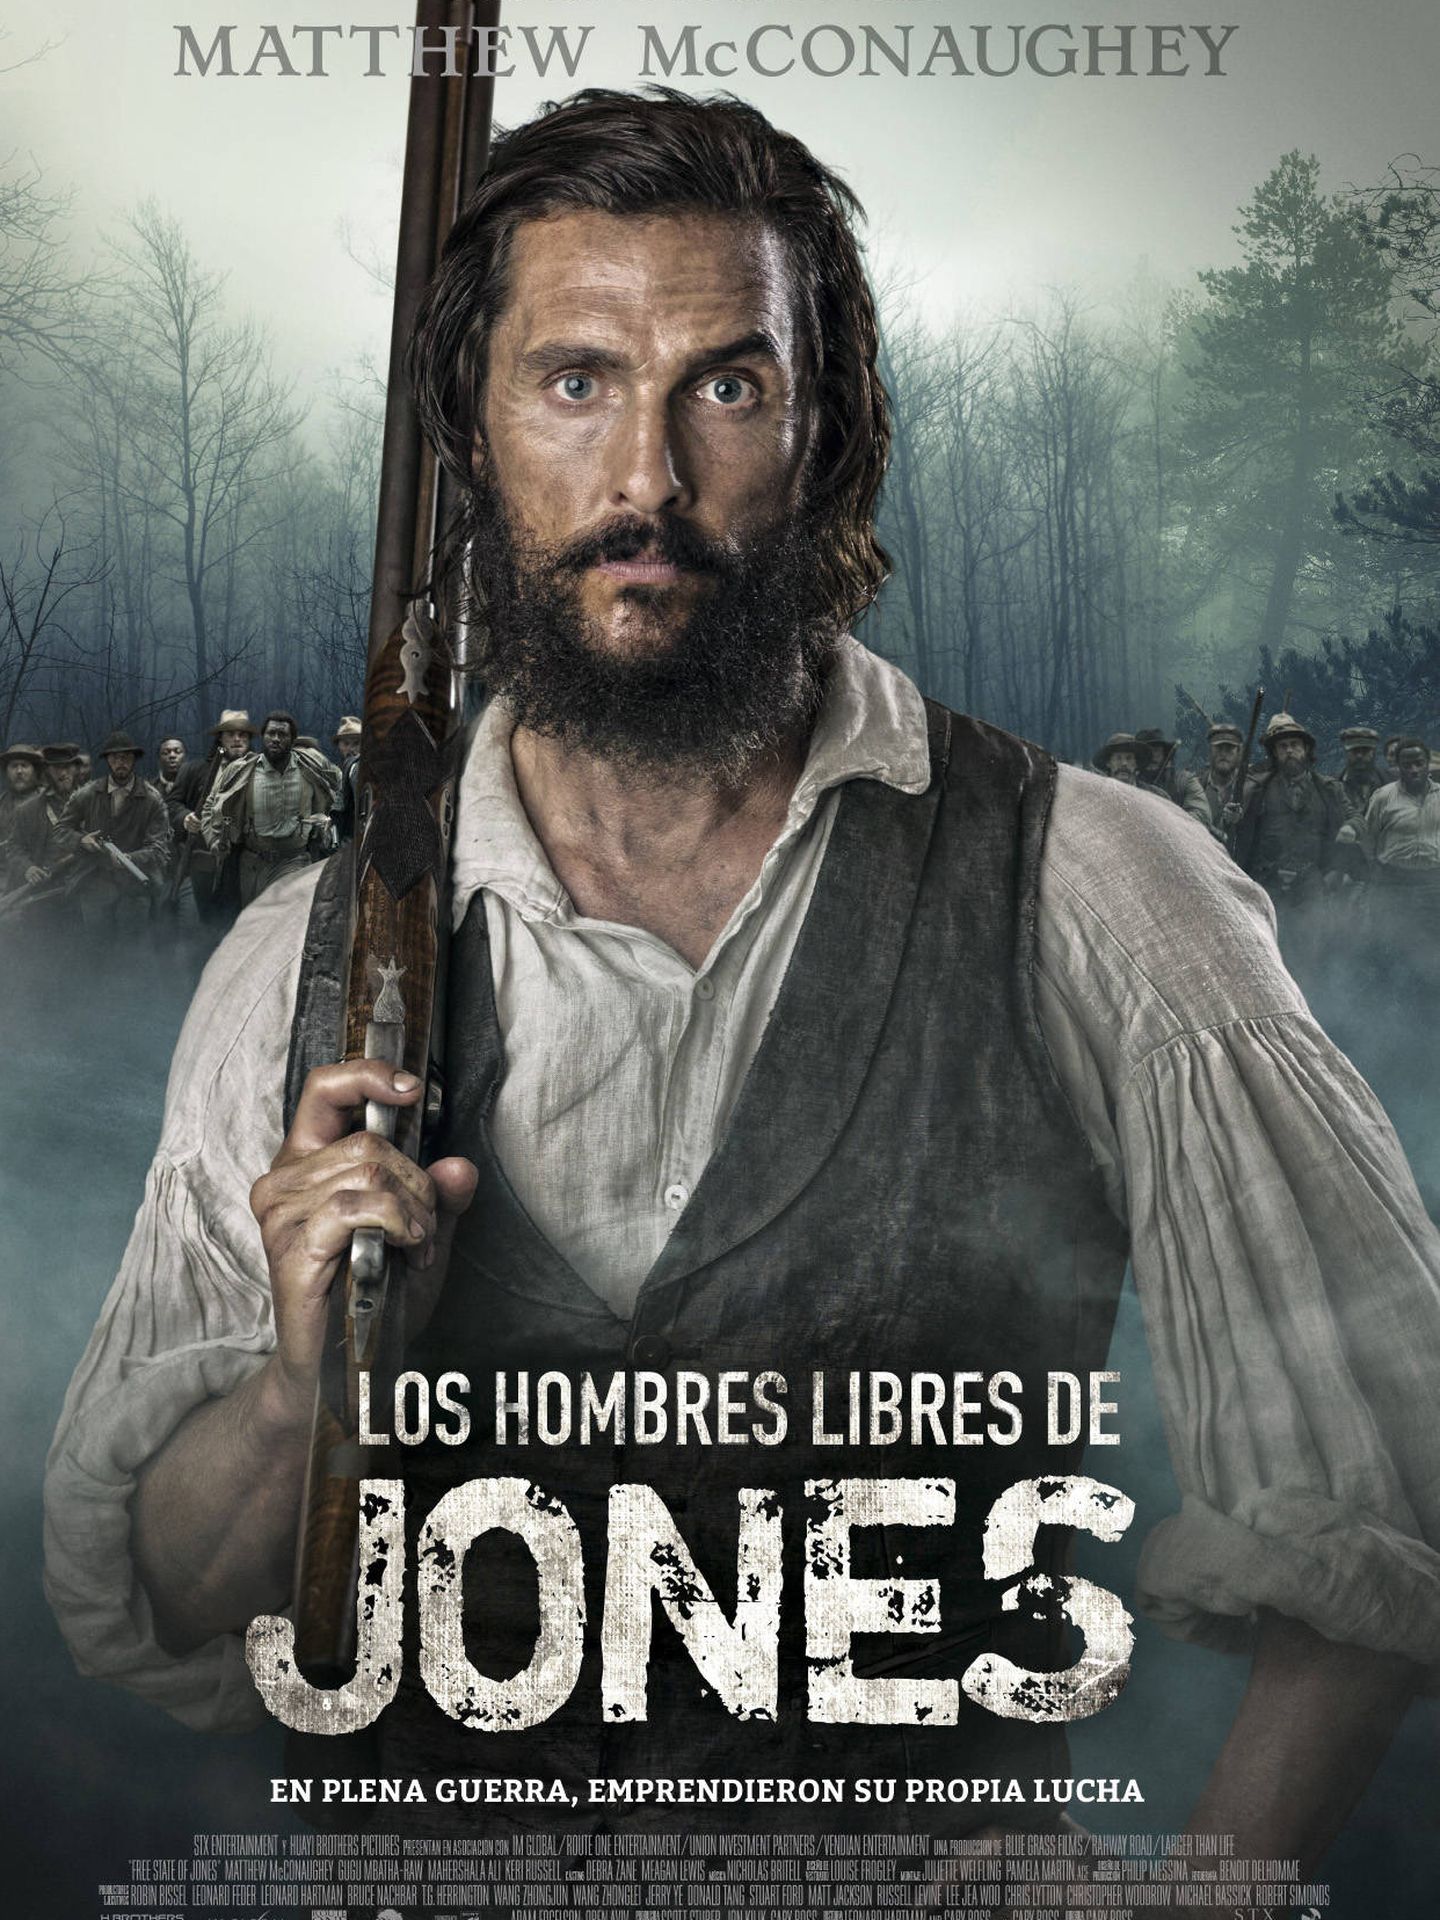 Cartel de 'Los hombres libres de Jones'